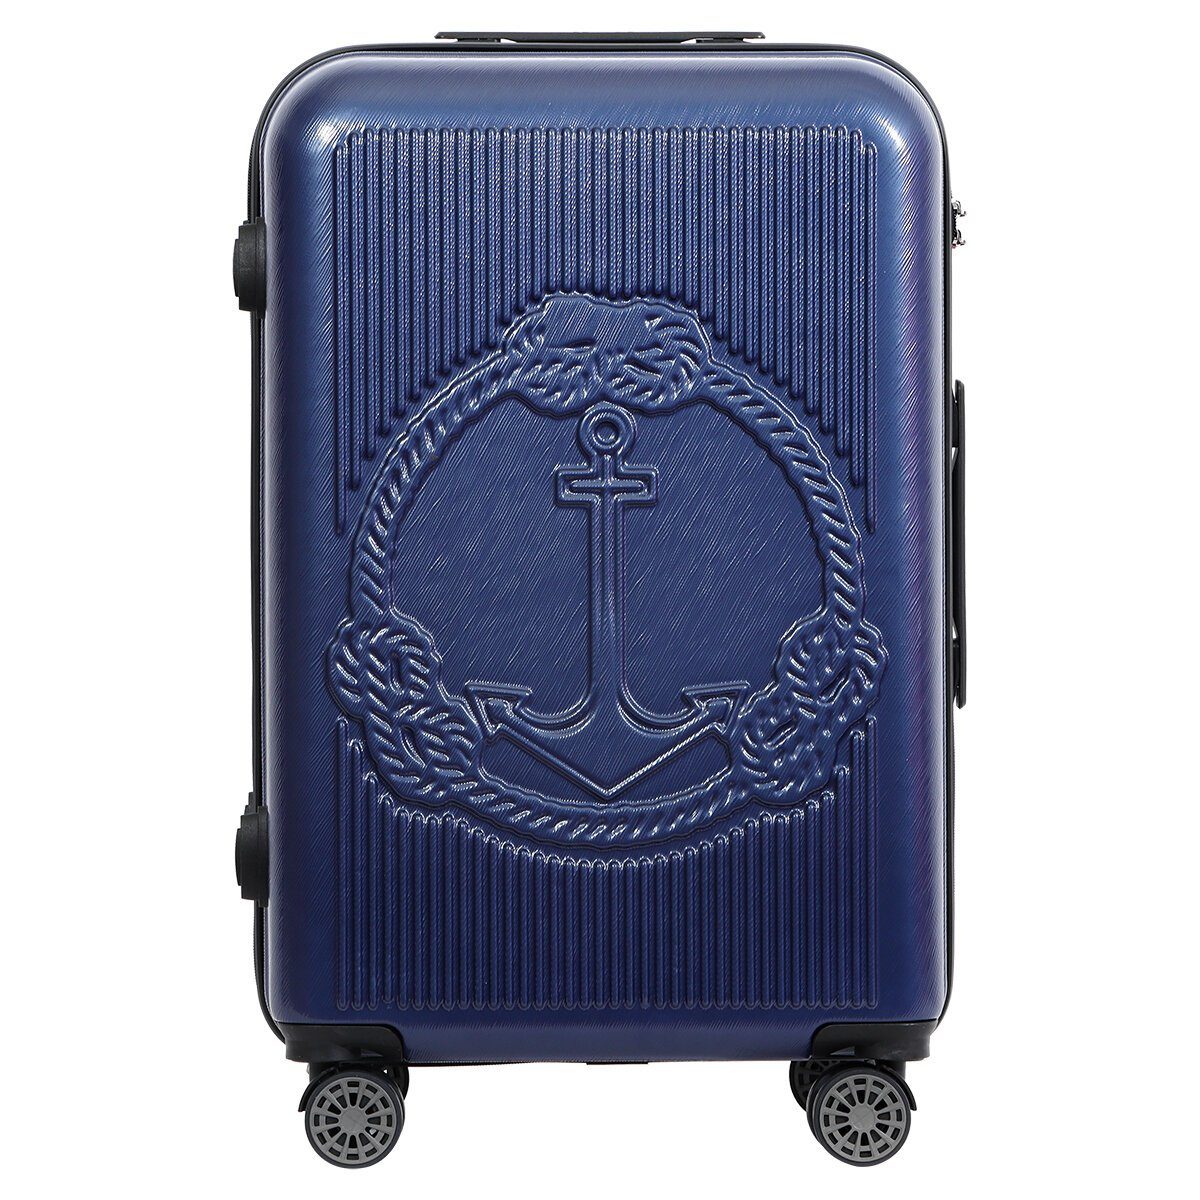 BIGGDESIGN Koffer Biggdesign Ocean Blau teilig 3 Koffer Kofferset Hartschale Set